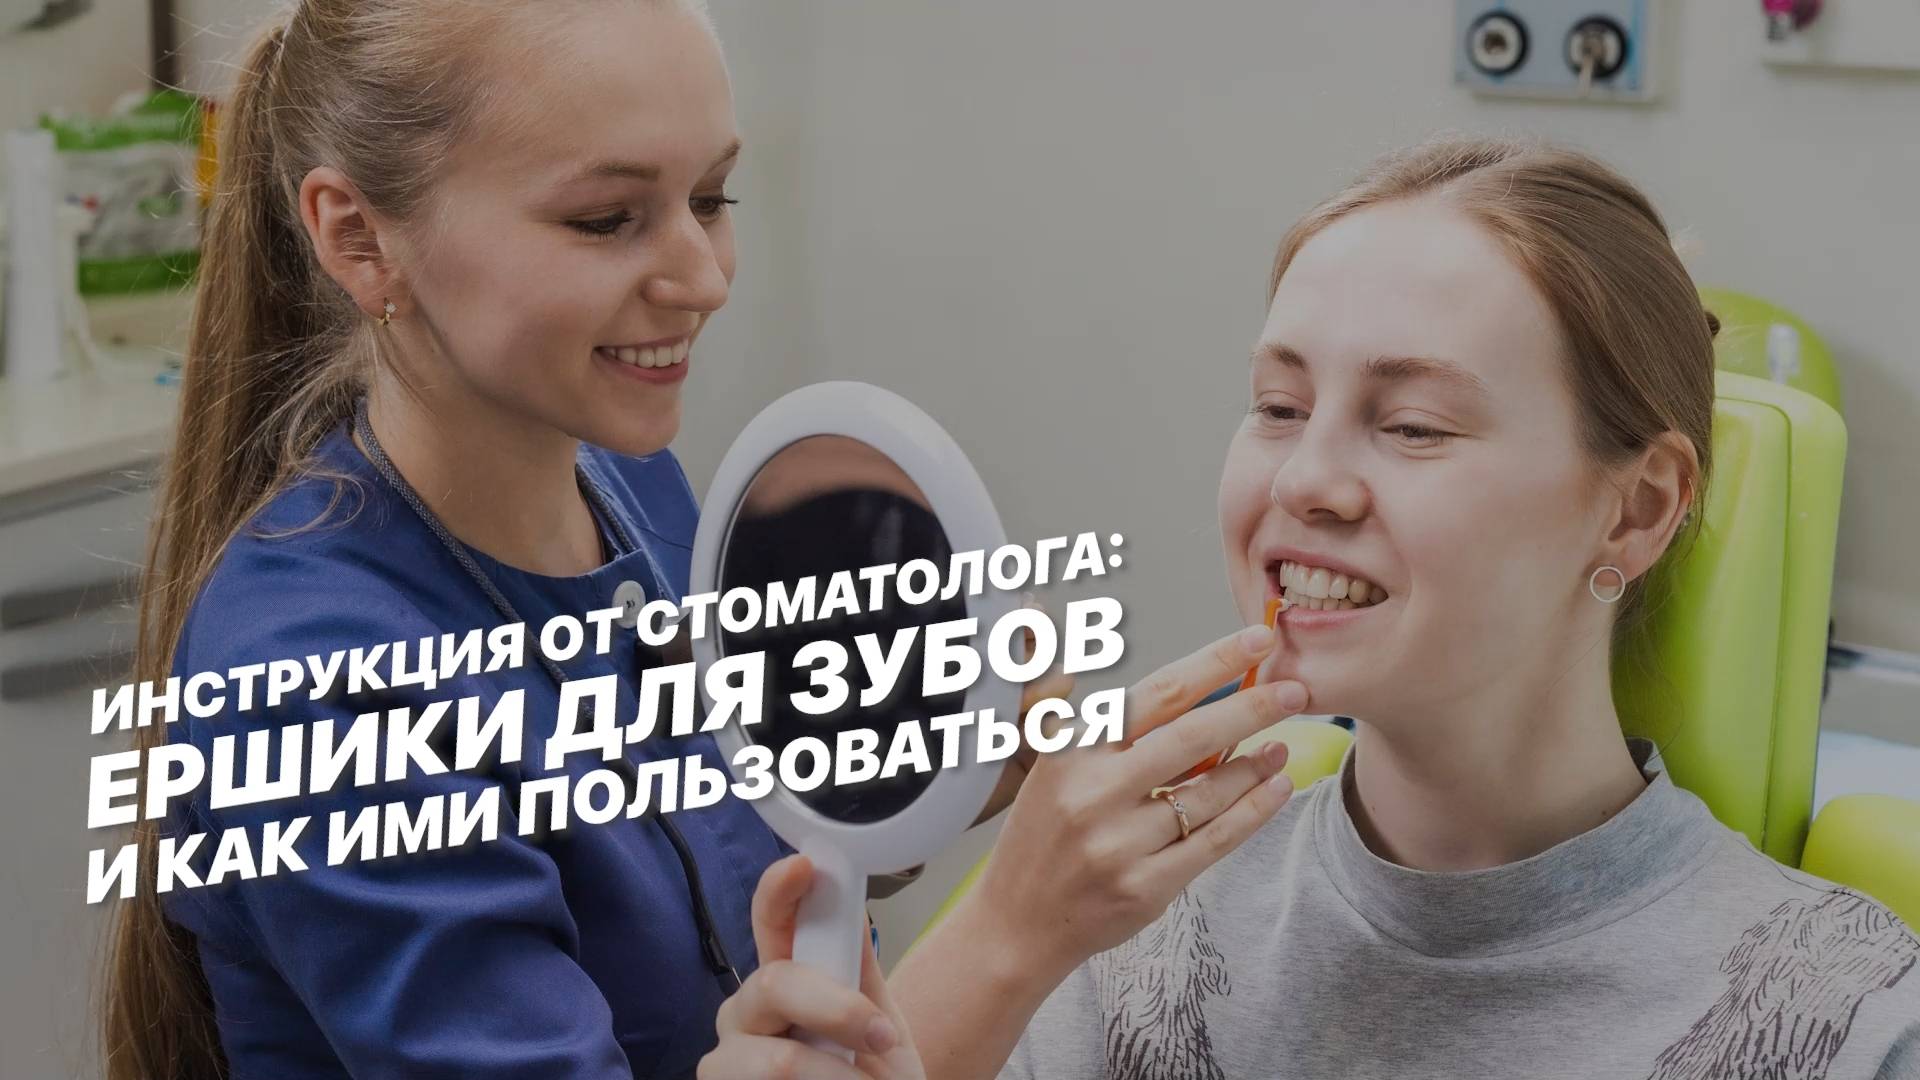 Инструкция от стоматолога: ёршики для зубов и как ими пользоваться.